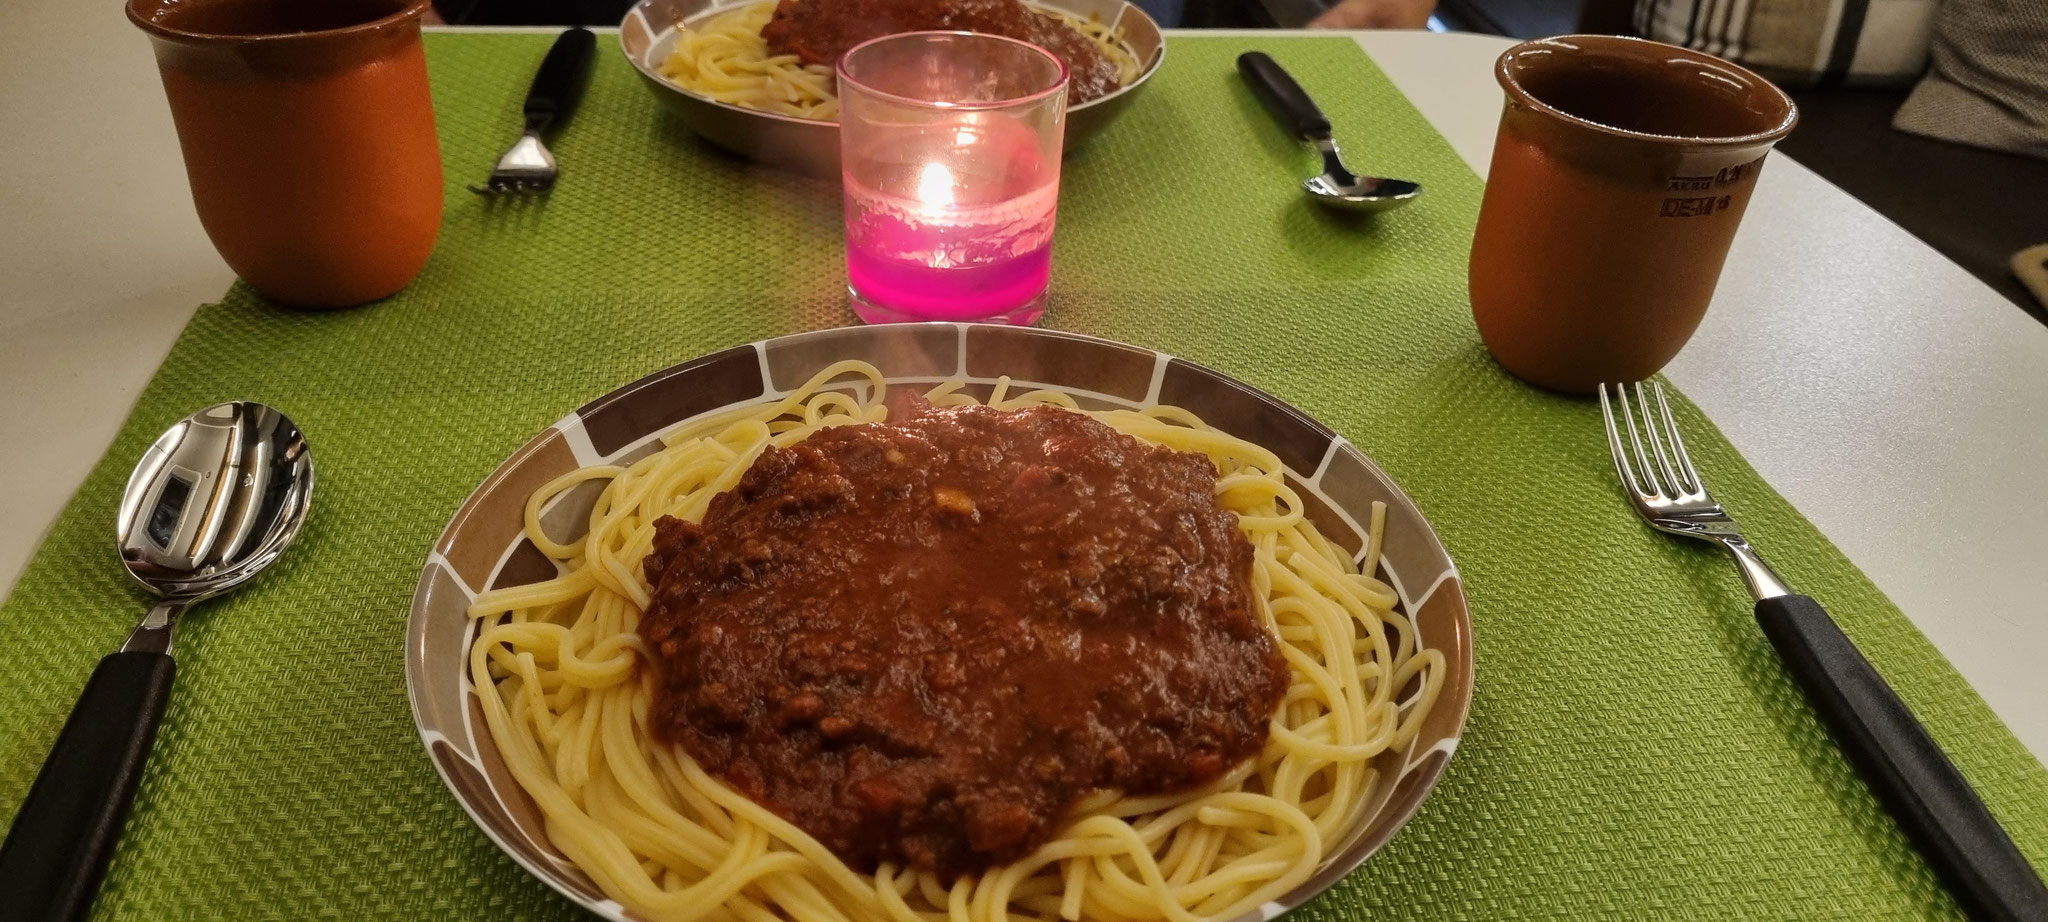 Spaghetti Bolognese - wie lecker!